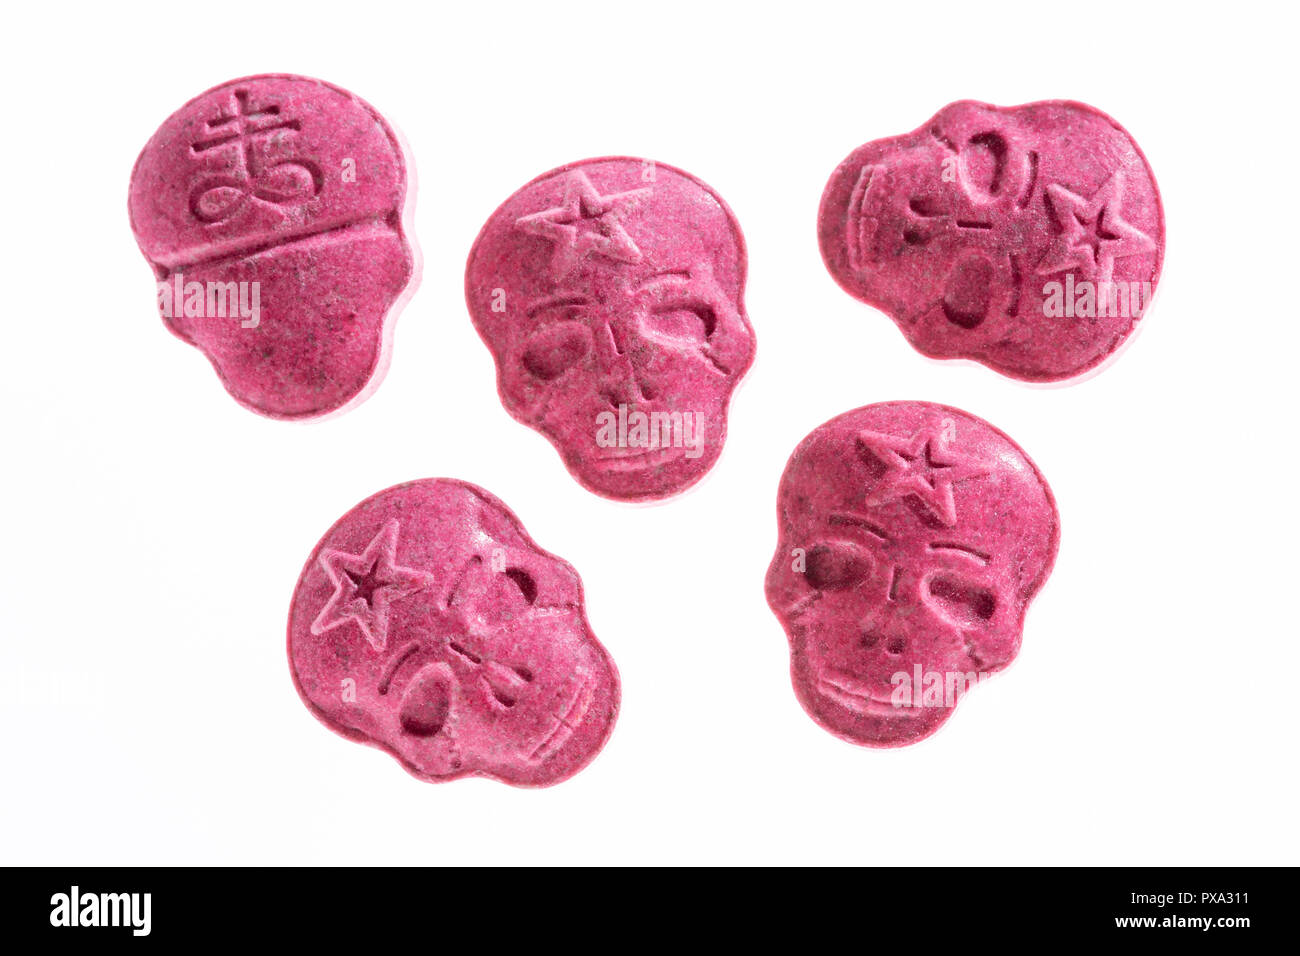 Fünf rote Armee Schädel, Ecstasy, MDMA oder Medikamente wie ein Schädel auf weißem Hintergrund geprägt. Stockfoto